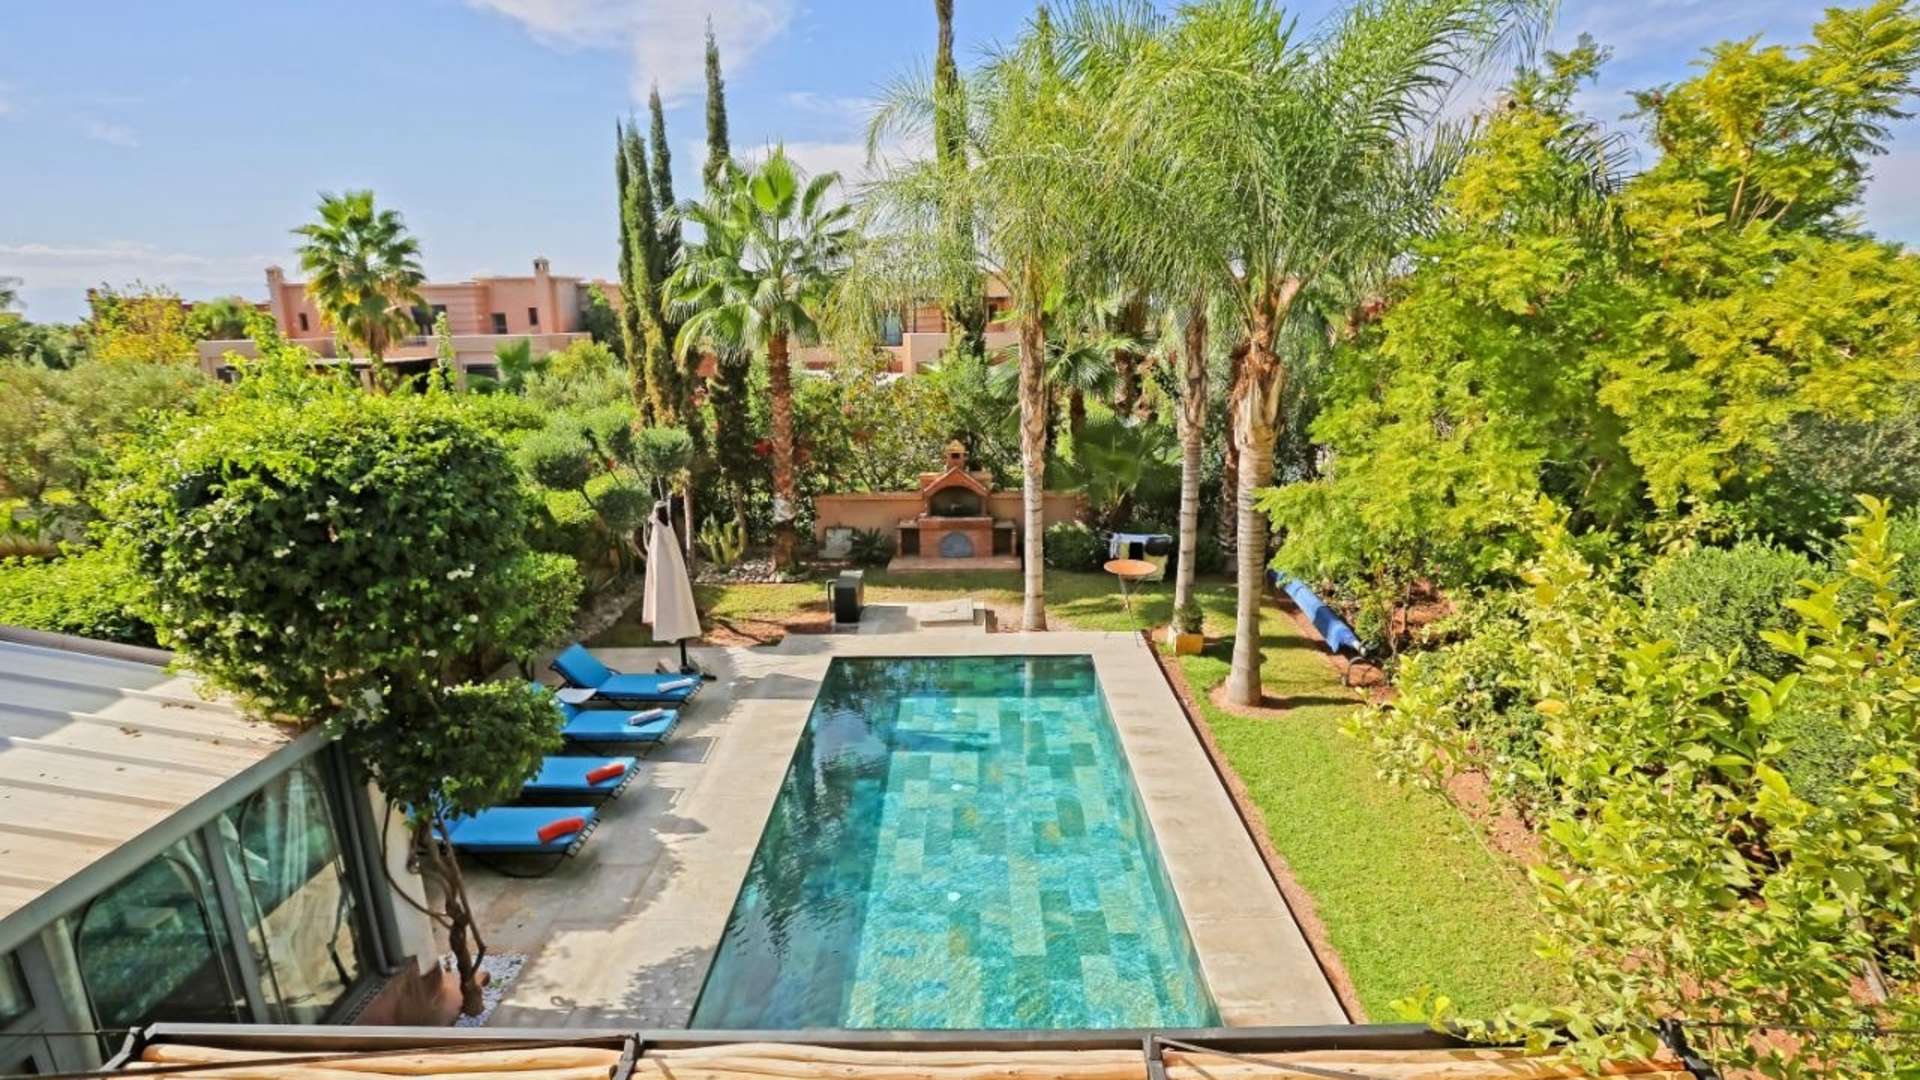 Location de vacances,Villa,Nouvelle villa de trois suites avec salle de sport, piscine et jardin privés dans un golf à Marrakech ,Marrakech,Golf Samanah